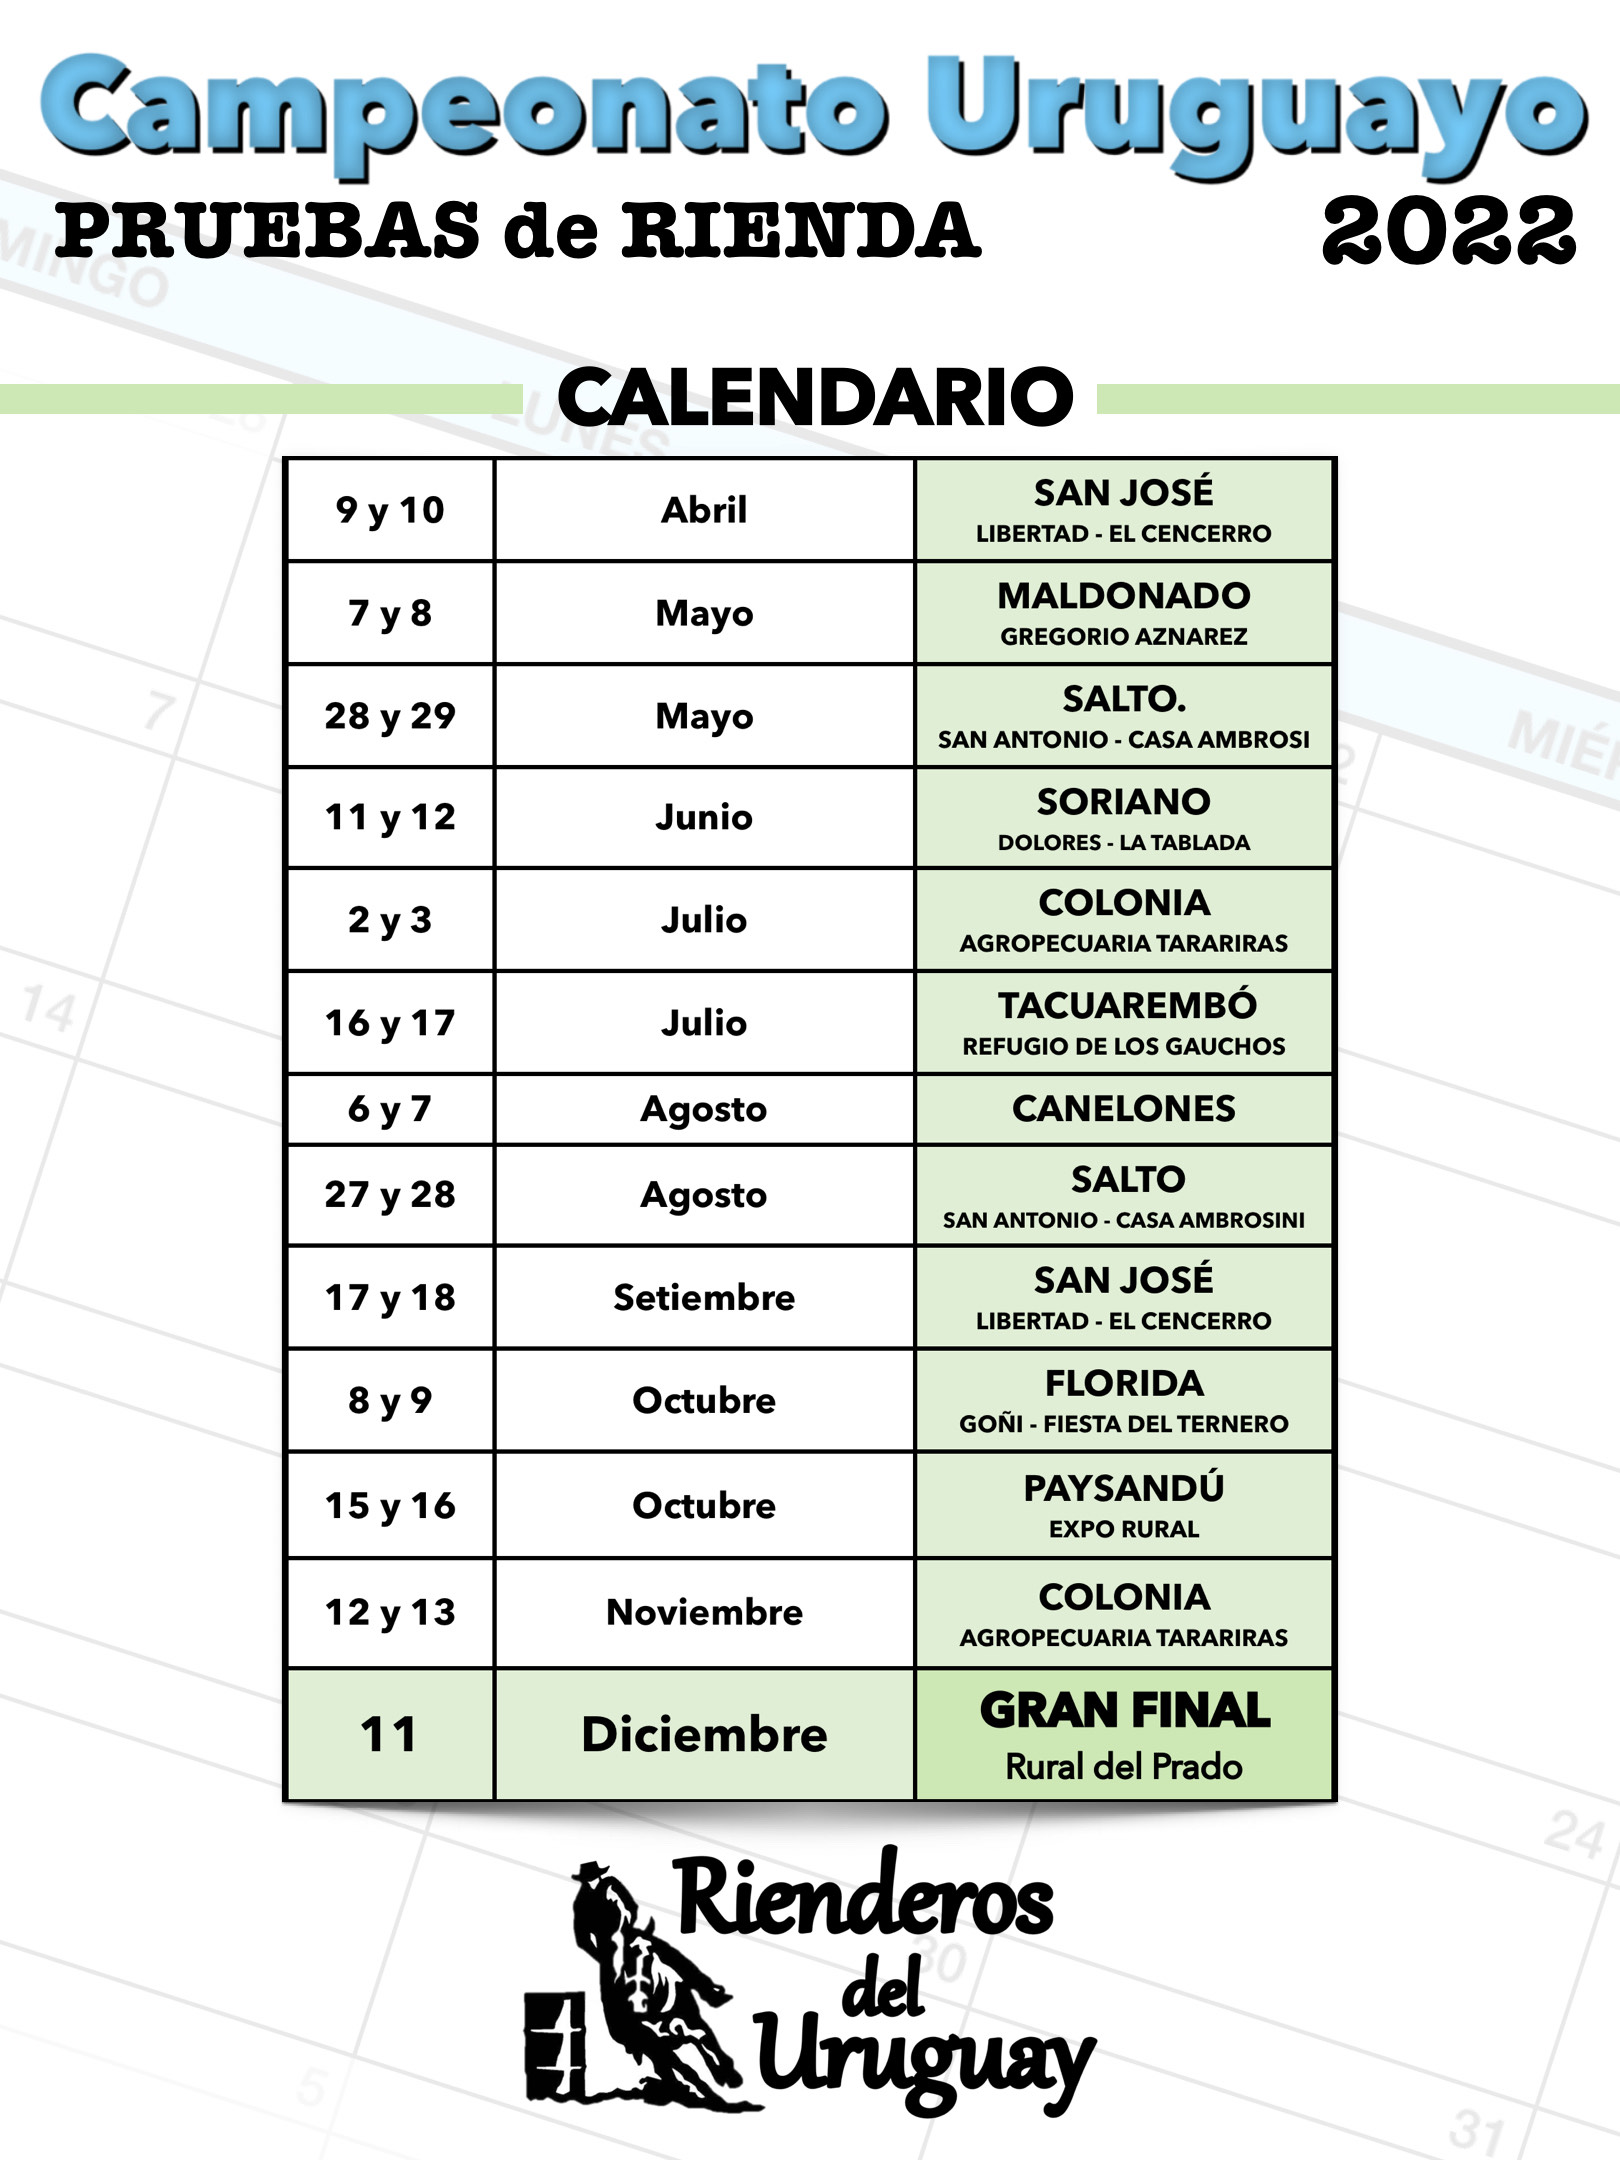 Calendario del Campeonato Uruguayo de Pruebas de Rienda 2022